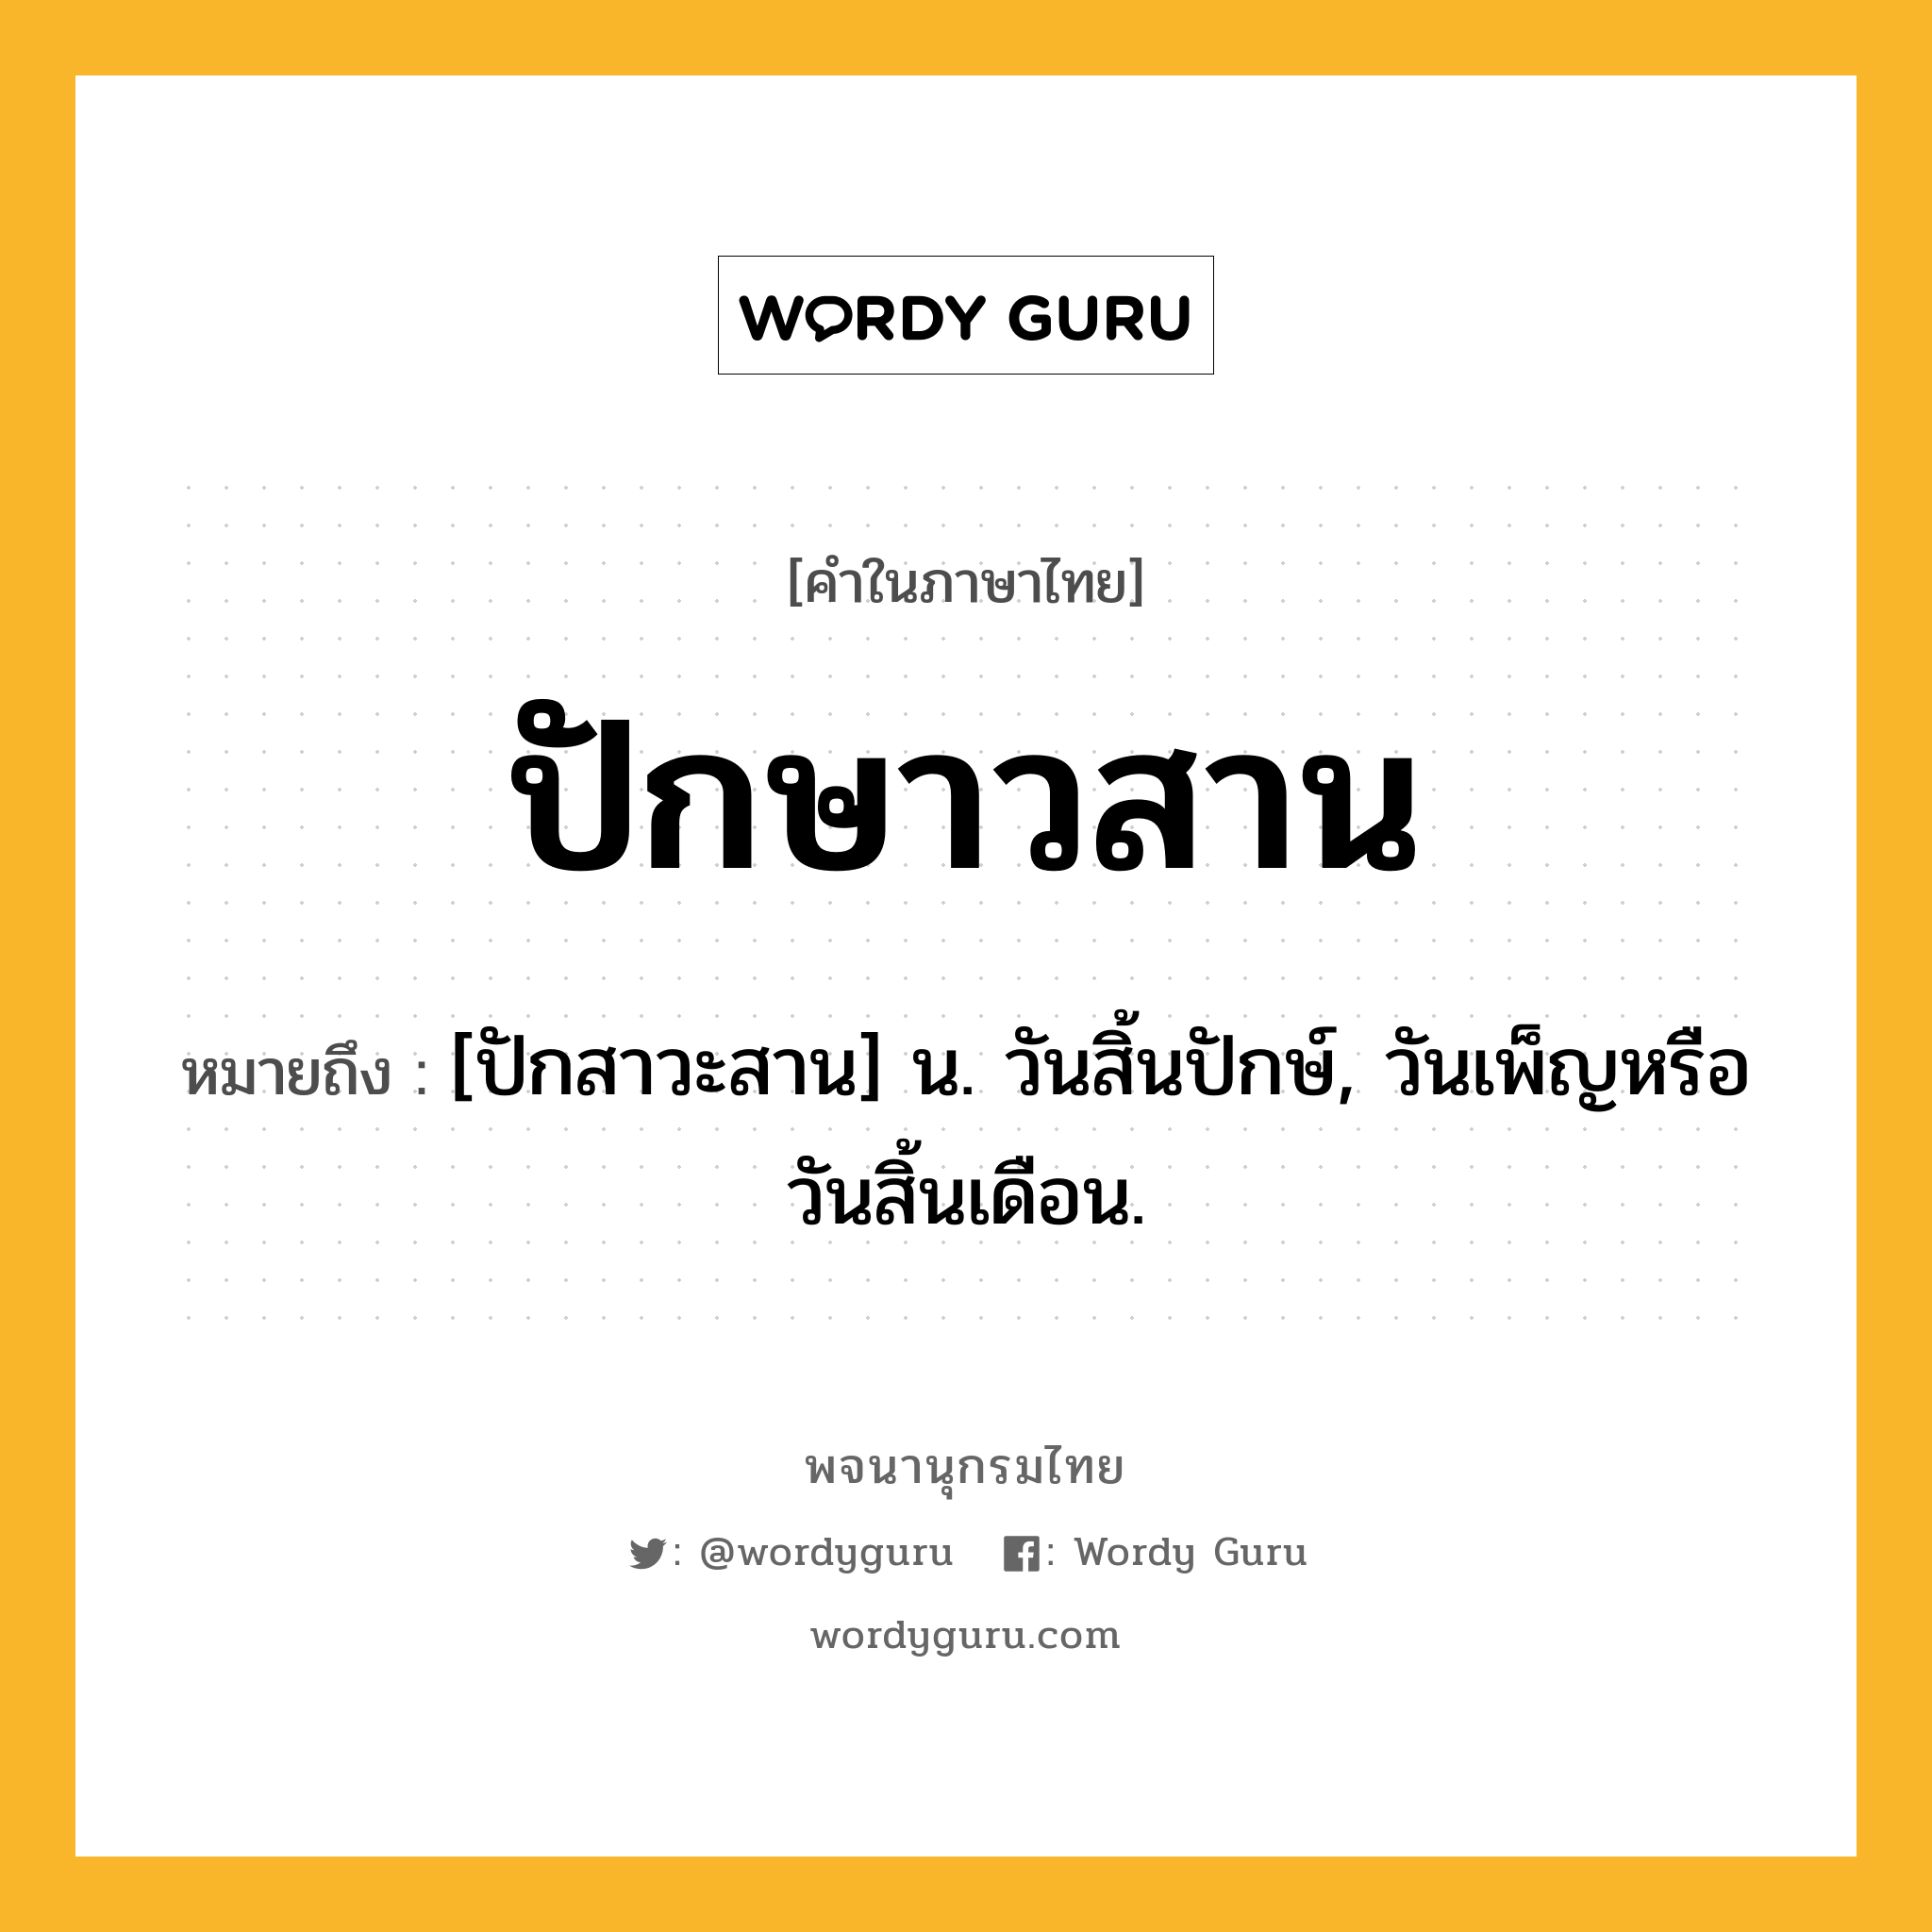 ปักษาวสาน ความหมาย หมายถึงอะไร?, คำในภาษาไทย ปักษาวสาน หมายถึง [ปักสาวะสาน] น. วันสิ้นปักษ์, วันเพ็ญหรือวันสิ้นเดือน.